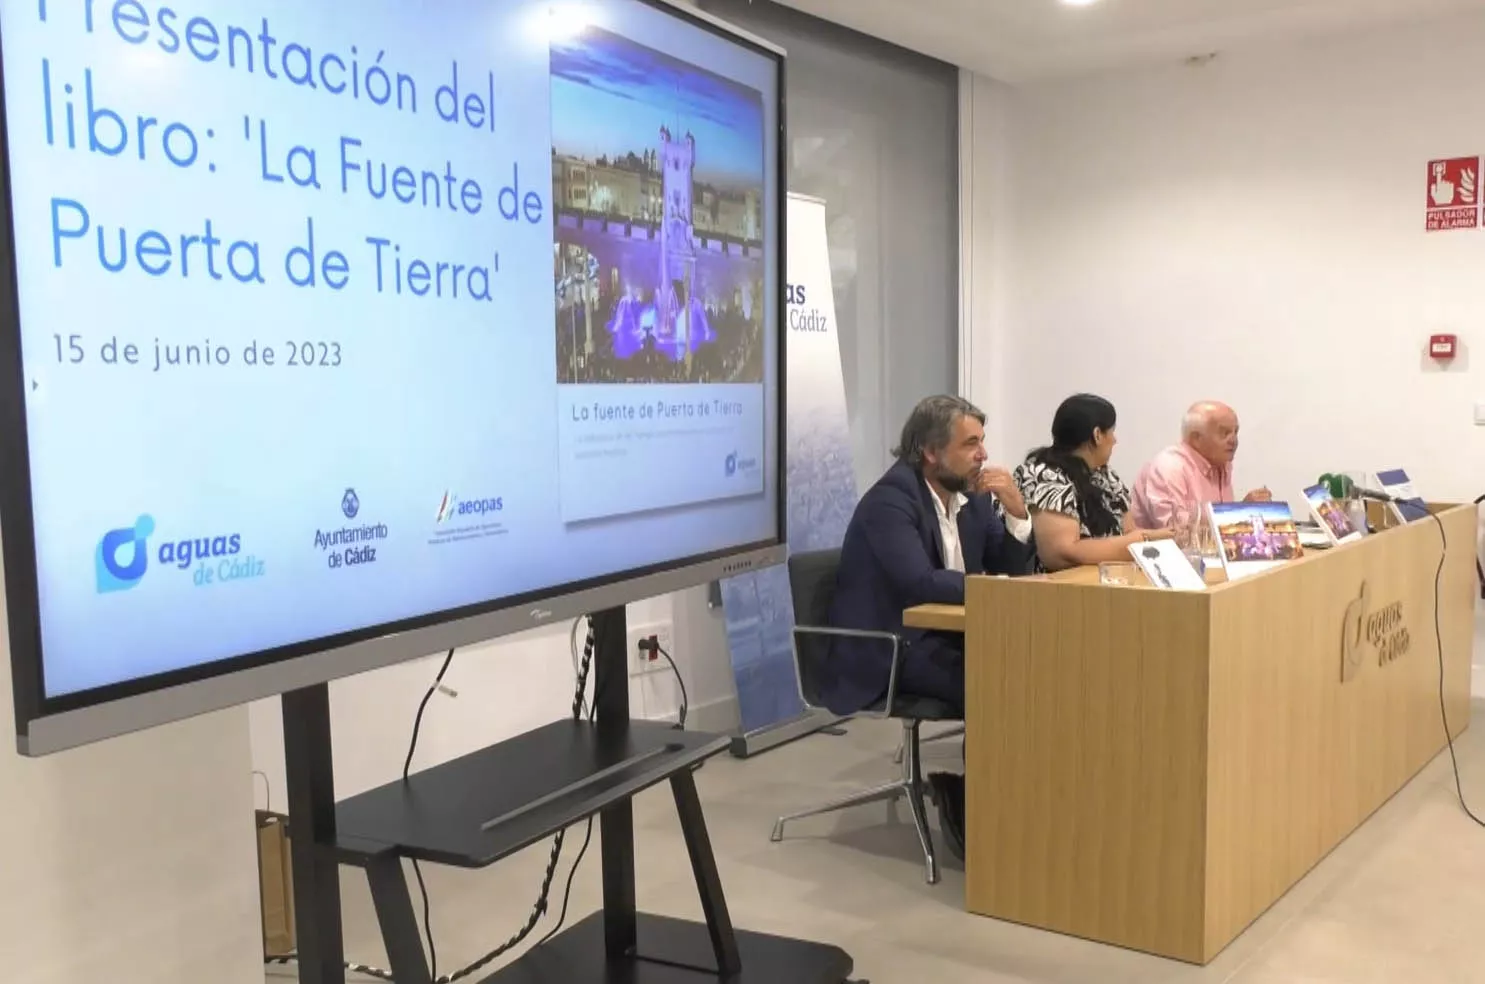 La presentación del libro 'La fuente de Puerta de Tierra' se ha celebrado en la sede central de Aguas de Cádiz